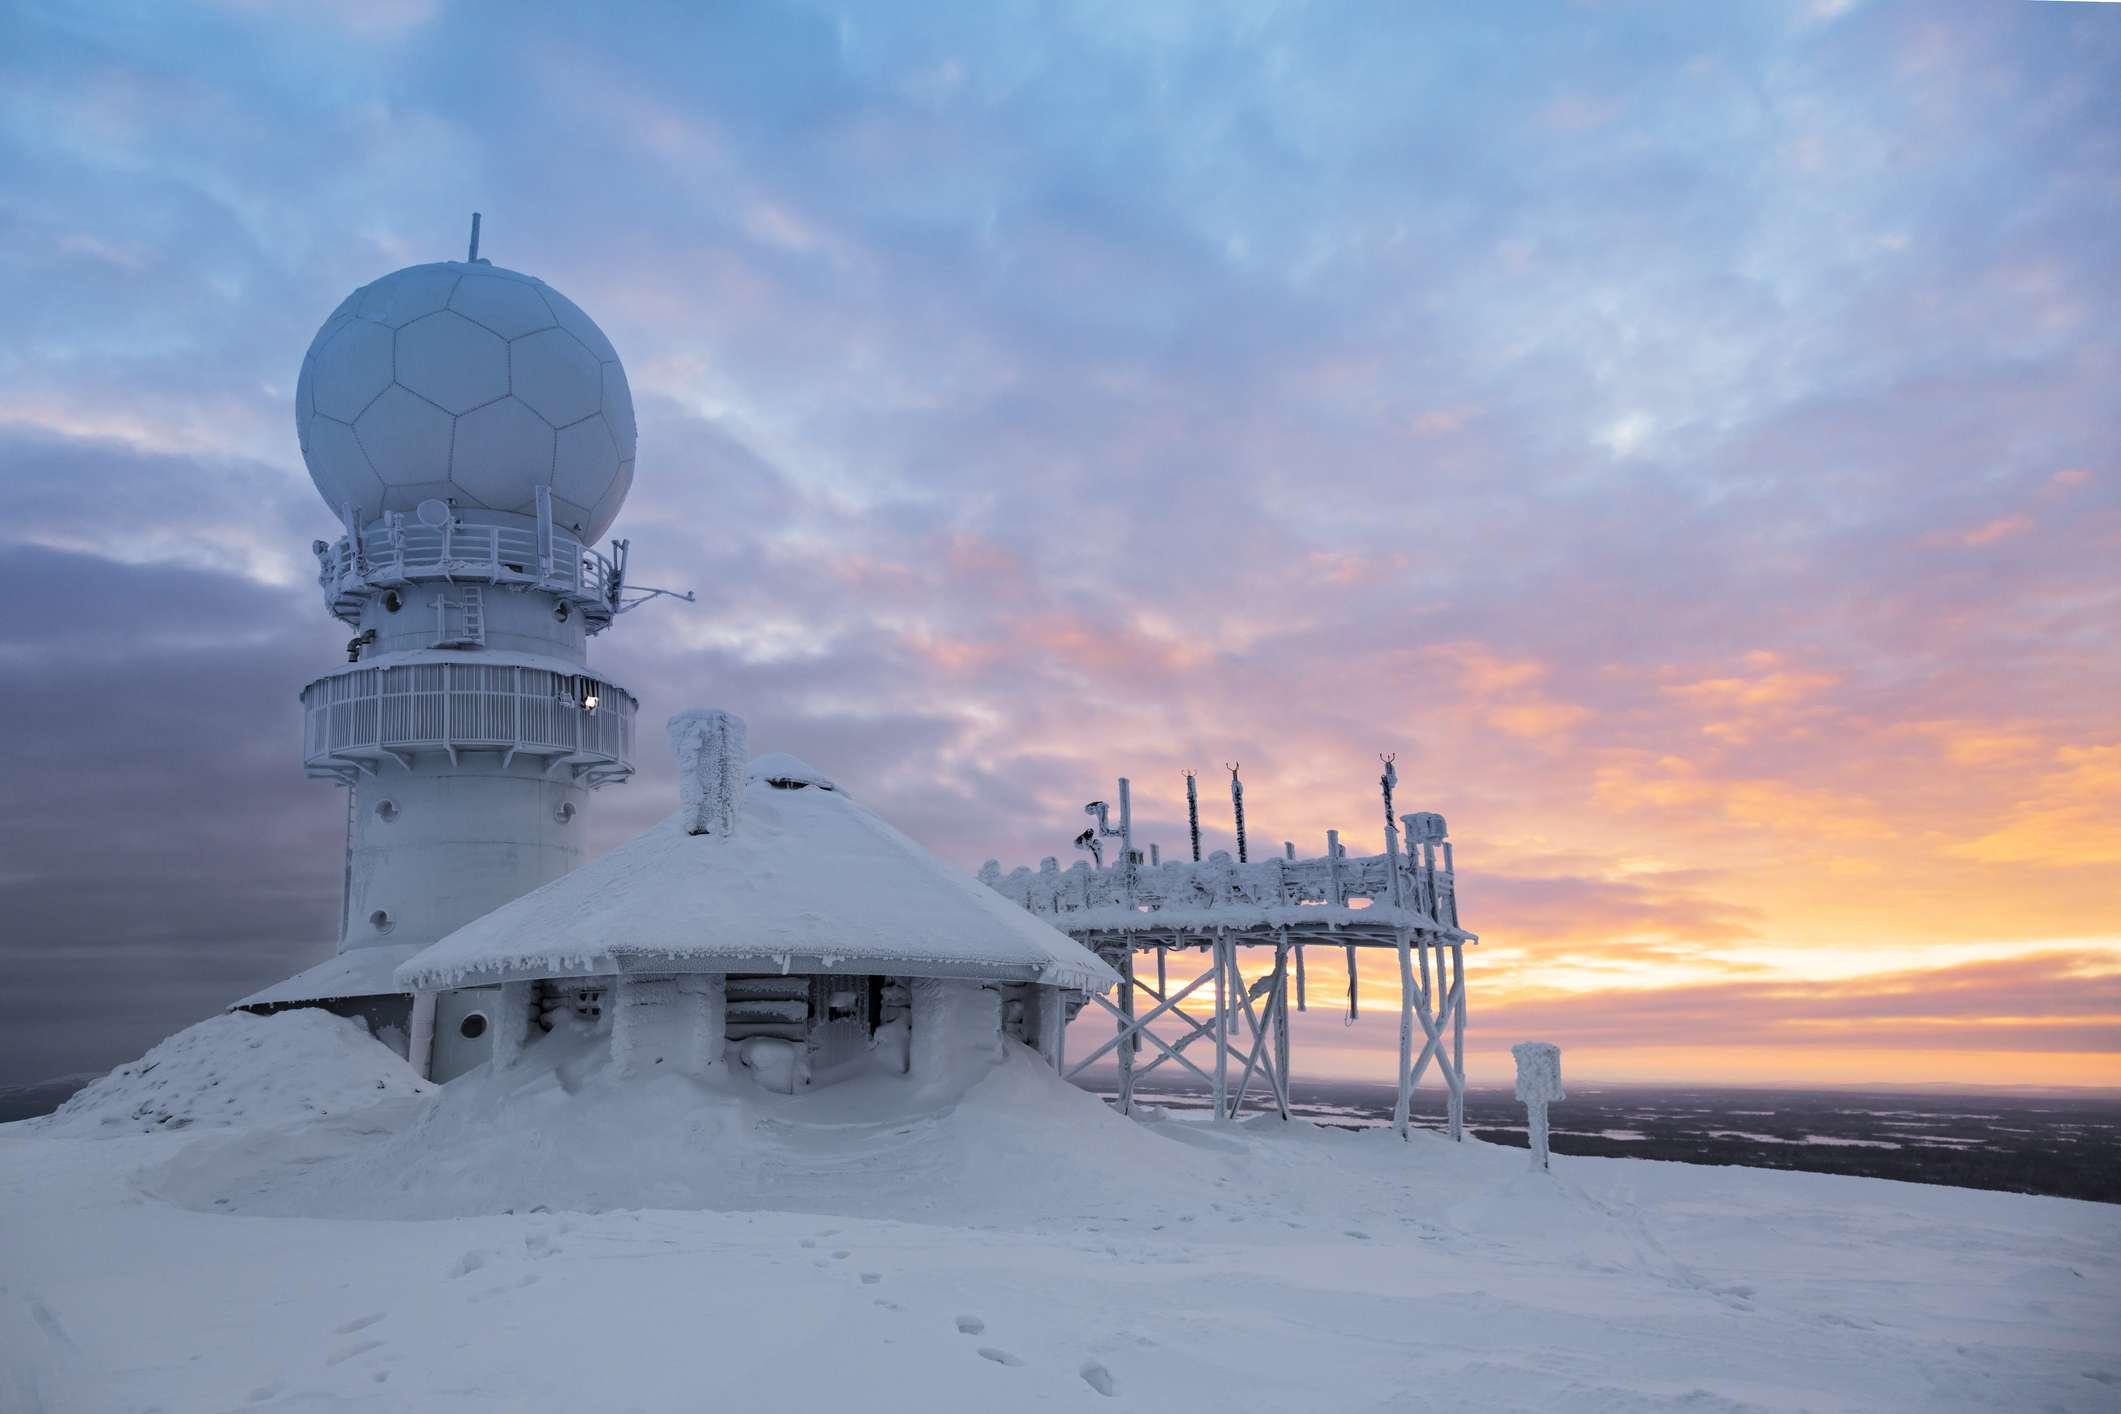 Wetterradarstation auf dem Gipfel des Berges - Finnland, Luosto